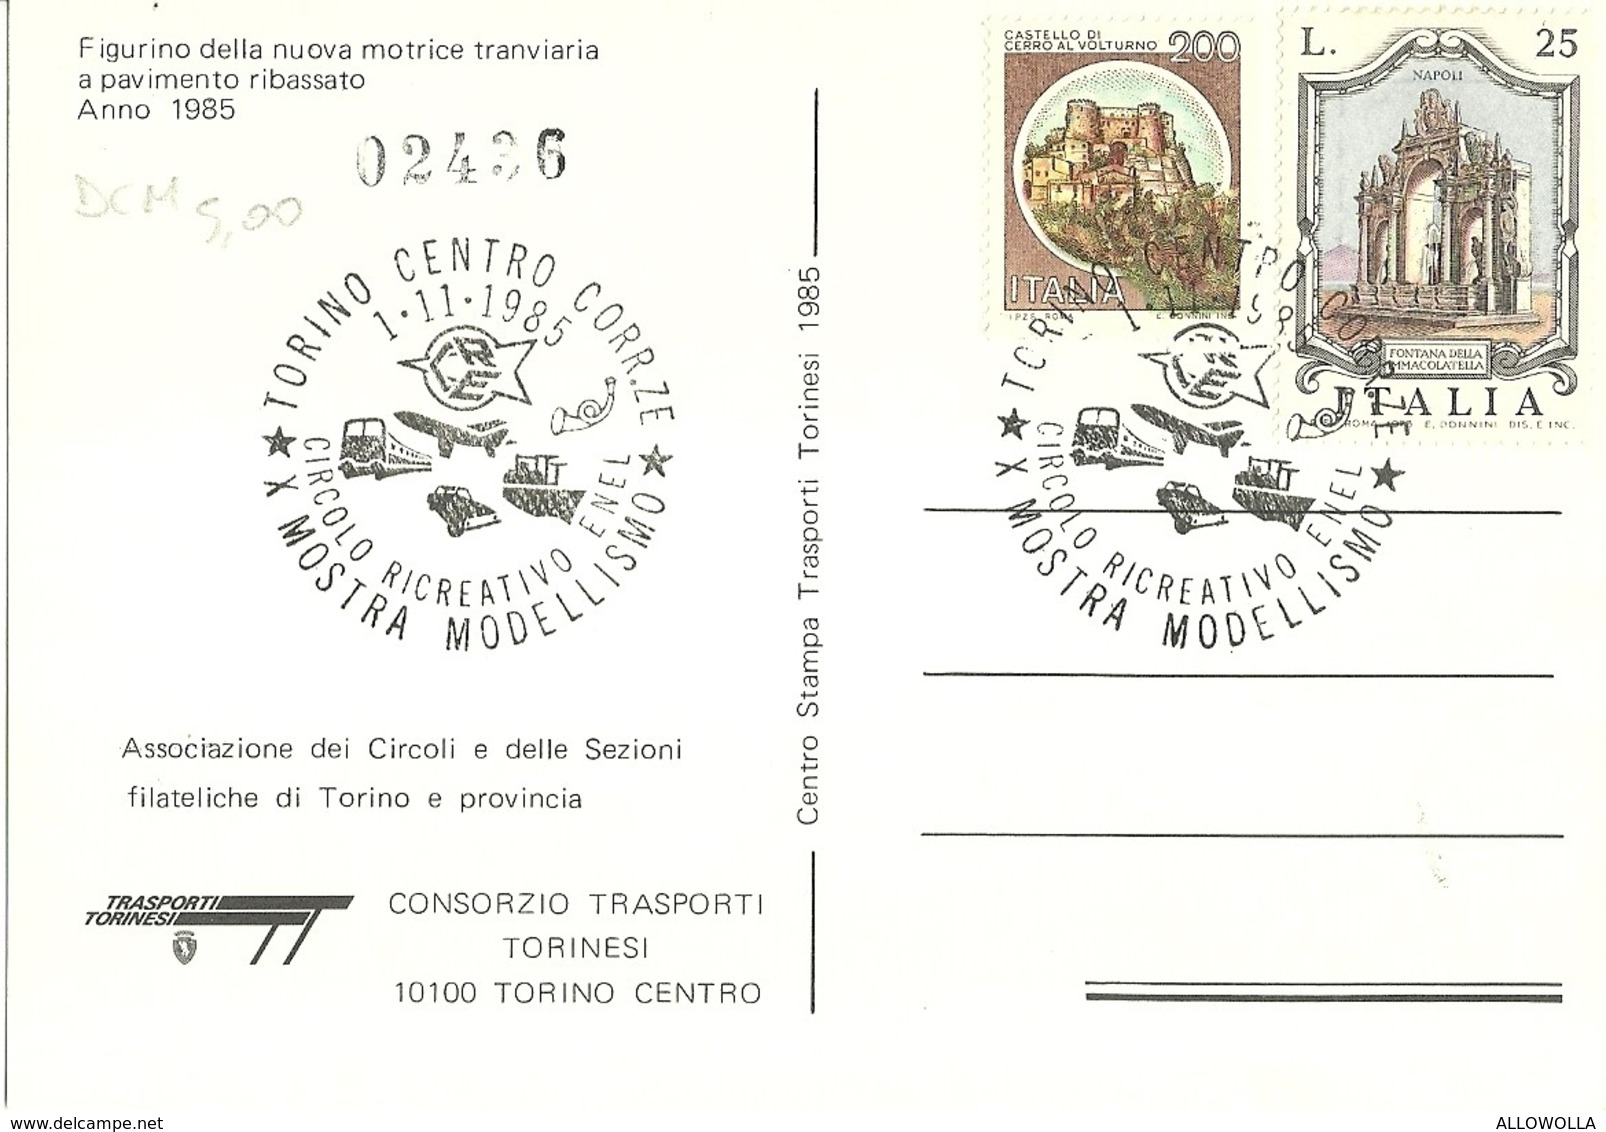 669 "FIGURINO DELLA NUOVA MOTRICE TRANVIARIA A PAVIMENTO RIBASSATO 1985" CART. NON SPED. - Trasporti